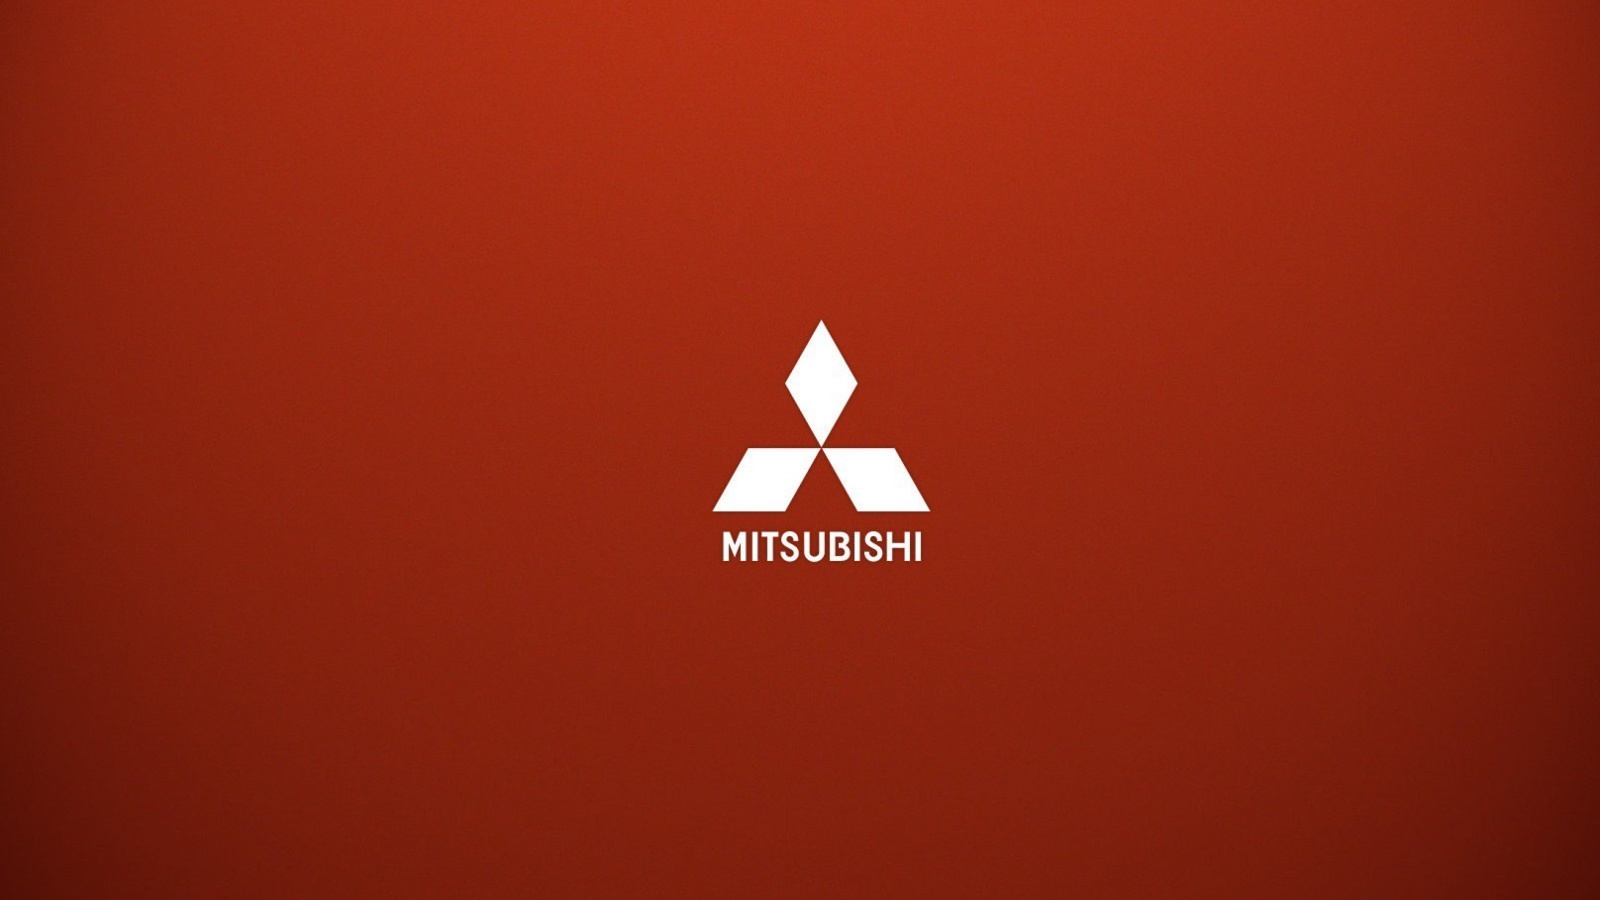 Das Mitsubishi logo Wallpaper 1600x900